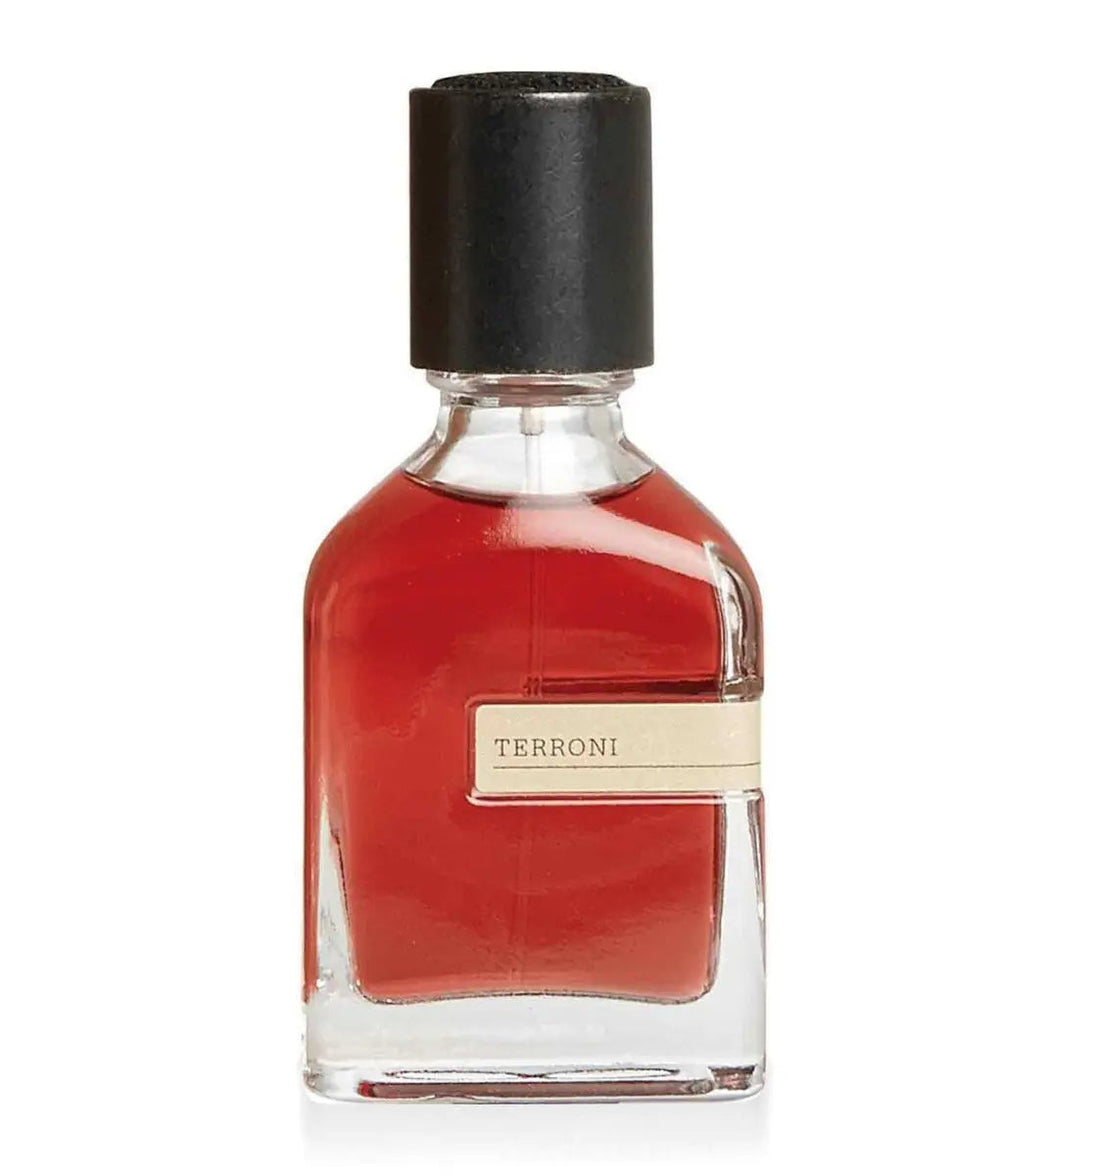 Terroni Orto Parisi perfume - 50 ml